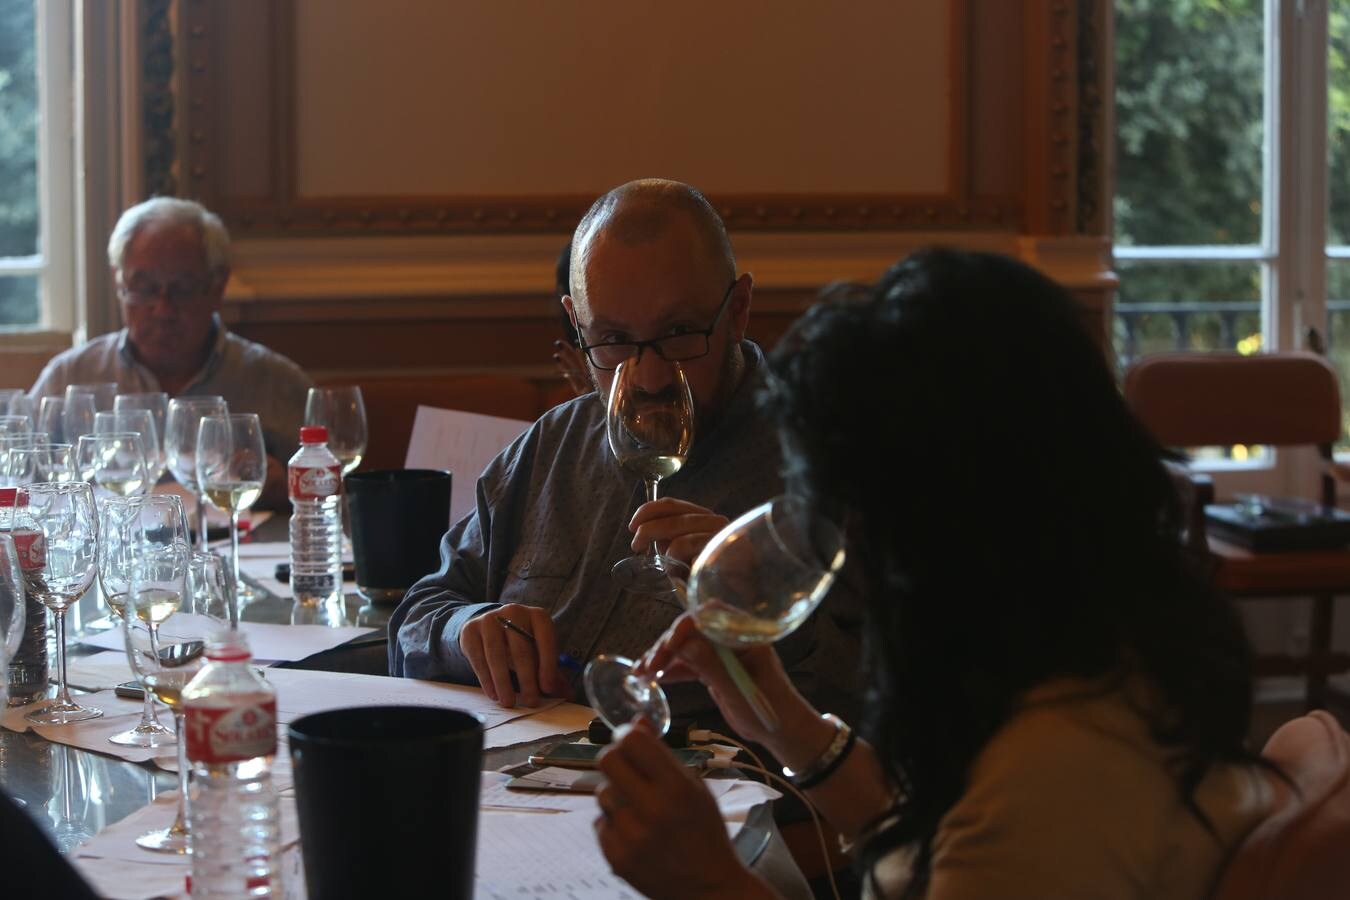 El vino blanco Behetría de Cieza selección barrica, de Bodegas y Majuelos de Cieza, en la categoría IGP Vinos de la Costa de Cantabria, y el tinto Ángel Moreno 6 meses de crianza en barrica, de la Bodega Orujo de Potes-Sierra del Oso, en la categoría IGP Vinos de la Tierra de Liébana, se han proclamado ganadores de la cuarta edición de los premios Optimum